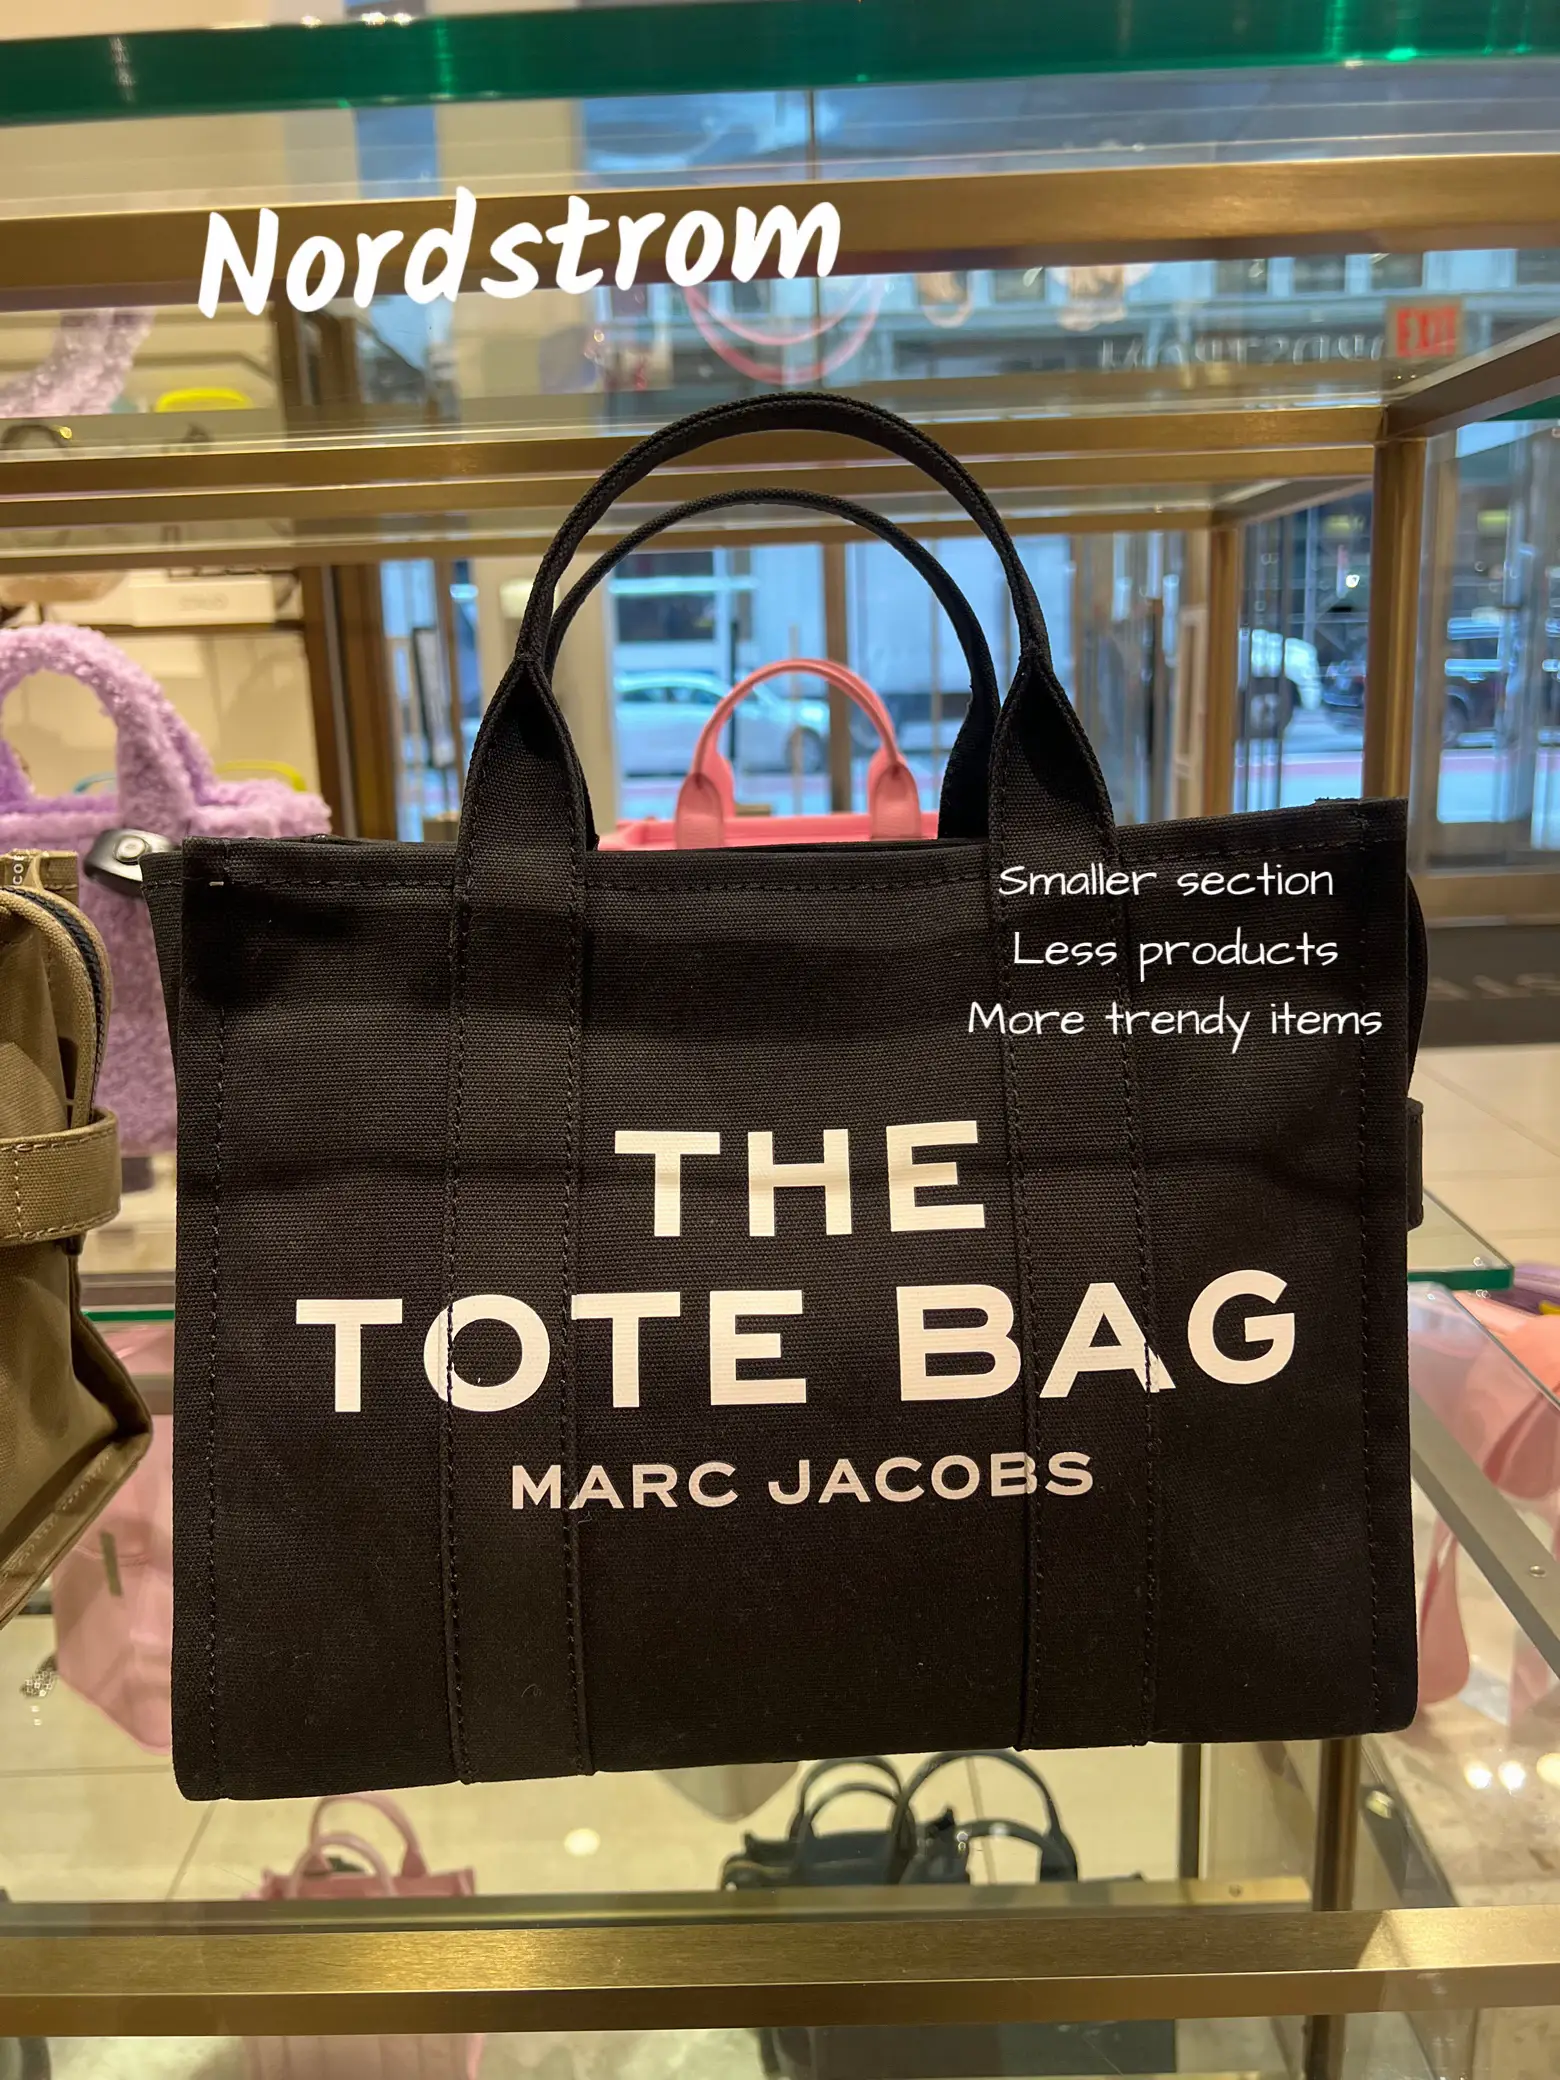 MARC JACOBS Handbags, Backpacks & More - Bloomingdale's